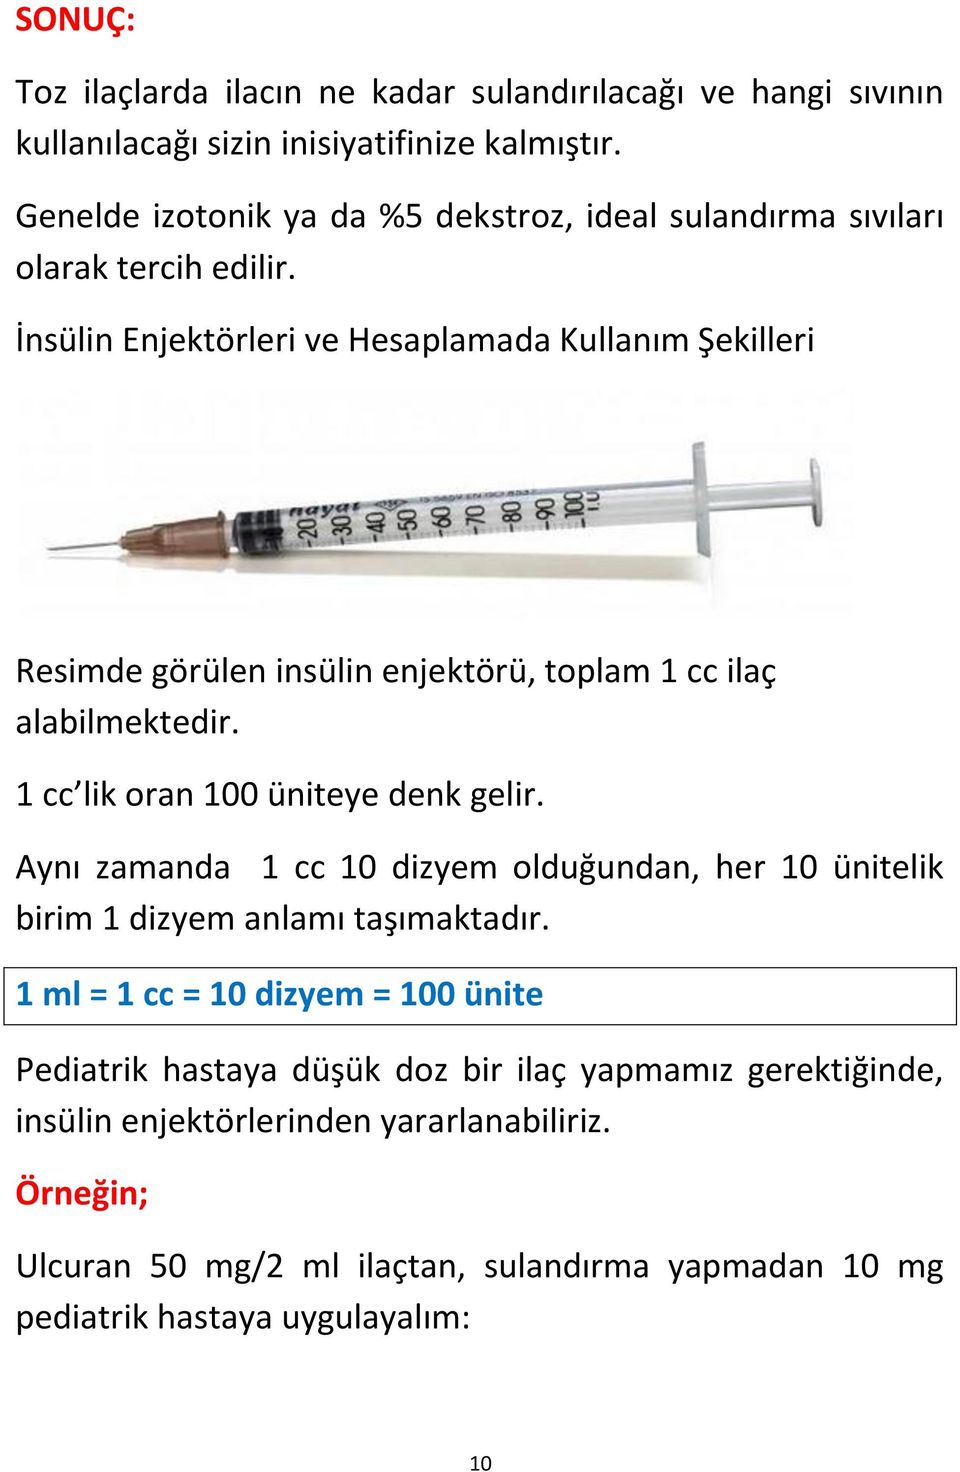 İnsülin Enjektörleri ve Hesaplamada Kullanım Şekilleri Resimde görülen insülin enjektörü, toplam 1 cc ilaç alabilmektedir. 1 cc lik oran 100 üniteye denk gelir.